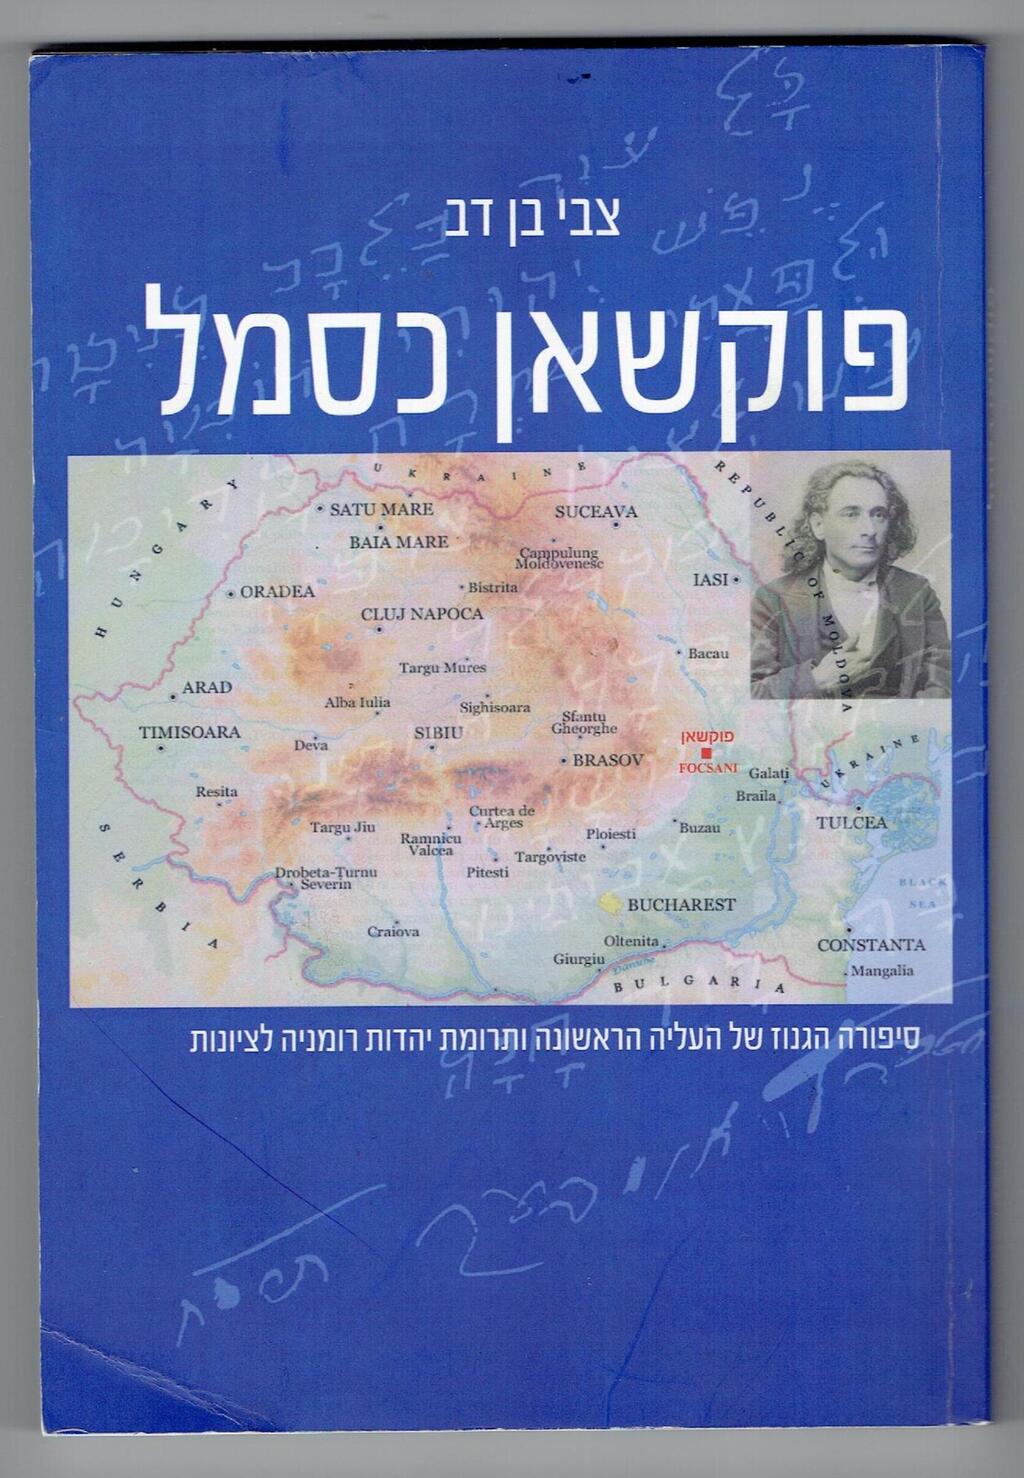 כריכת הספר "פוקשאן כסמל" מאת צבי בן דב